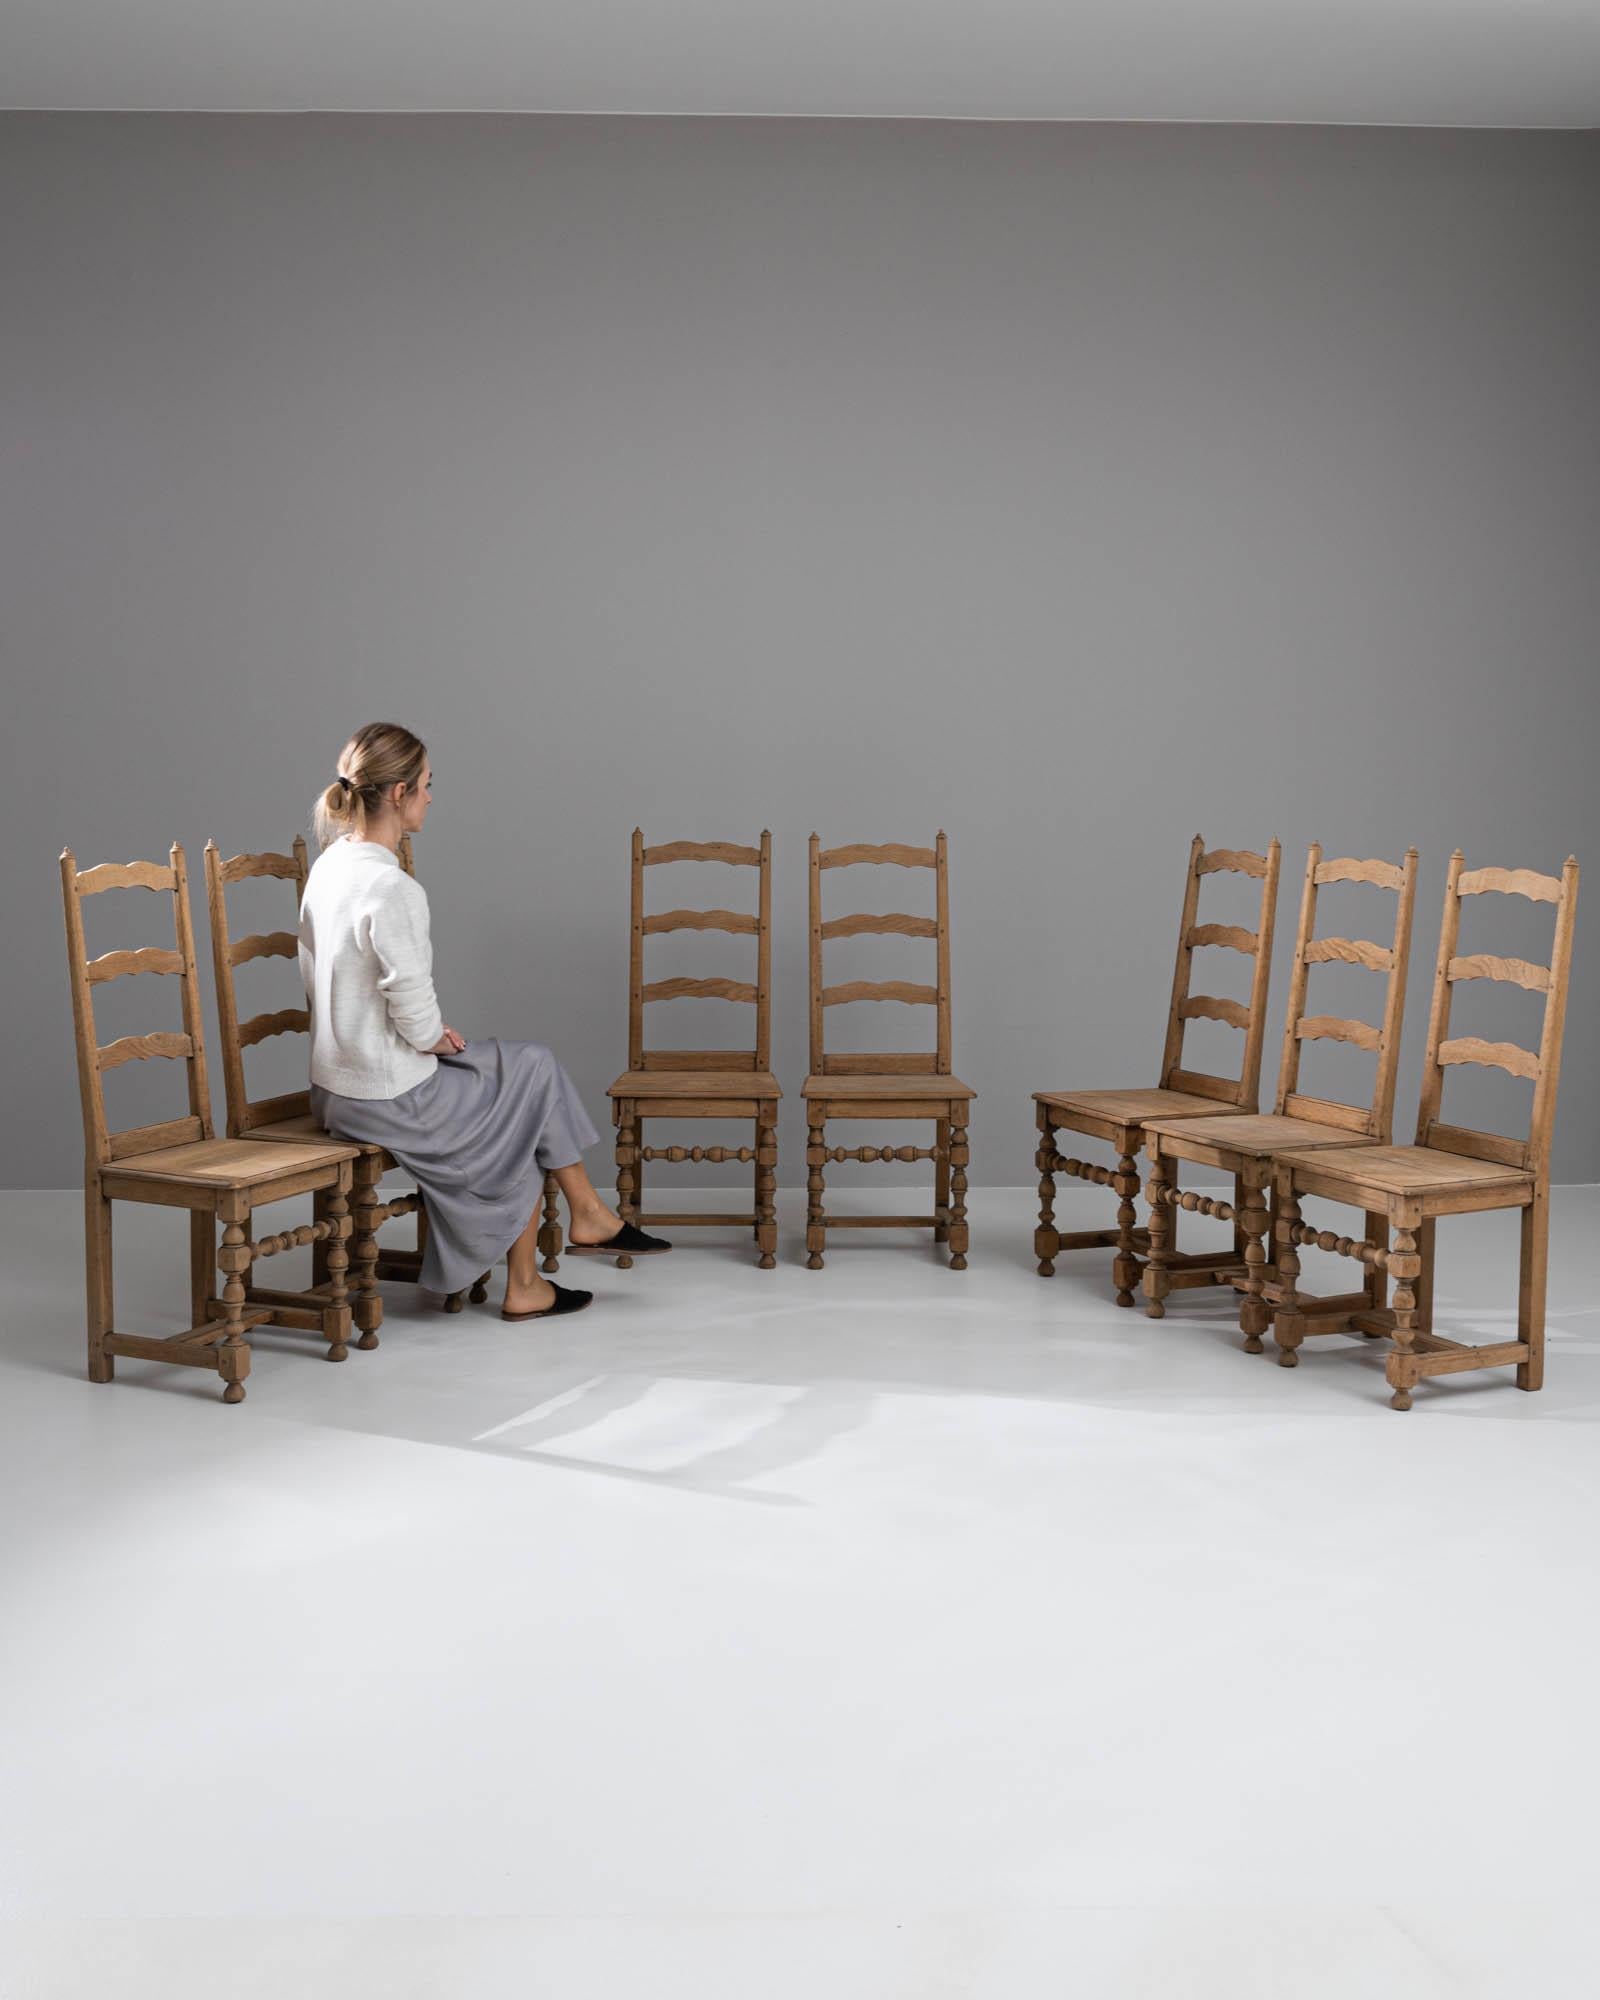 Wir stellen Ihnen ein Set von acht belgischen Eichenstühlen aus dem 20. Jahrhundert vor, die von robuster Eleganz und rustikalem Charme zeugen. Jeder Stuhl hat eine beeindruckende Präsenz und die natürliche Maserung der Eiche erzählt Geschichten aus